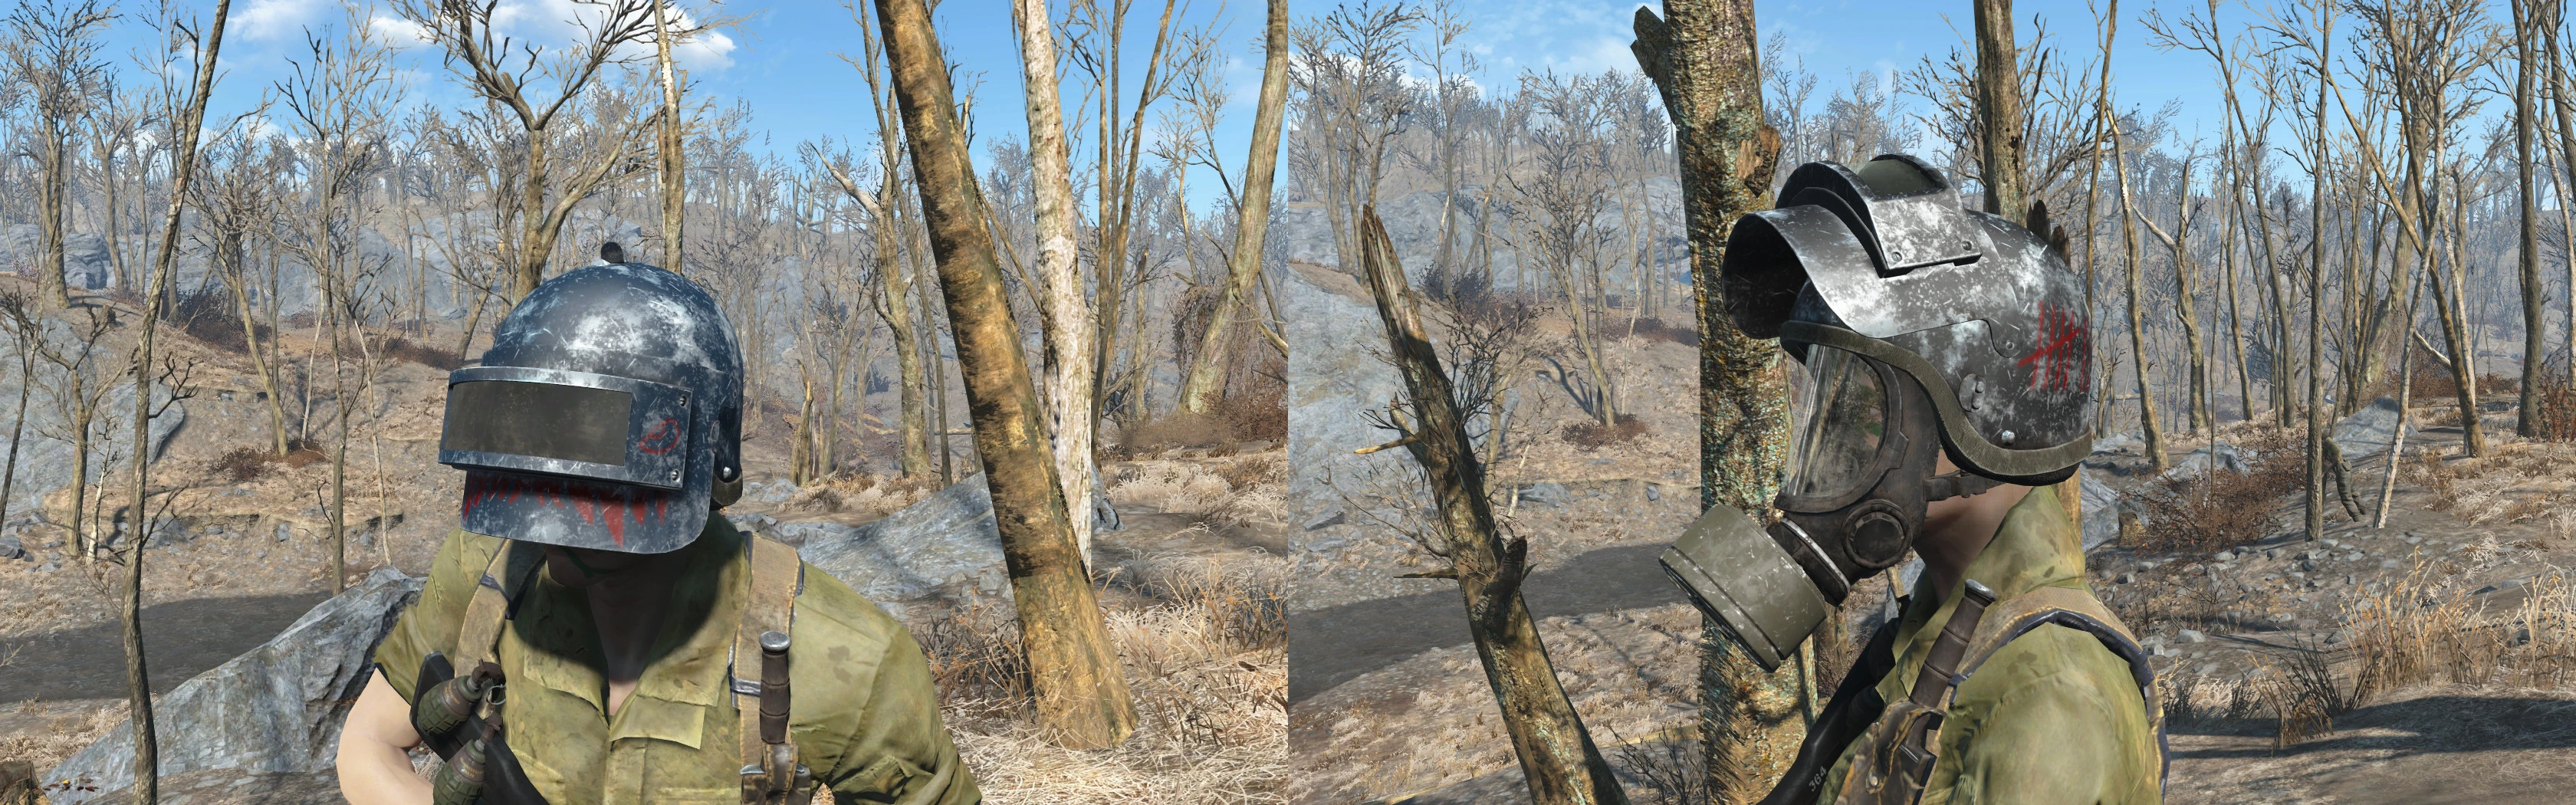 Fallout 4 шлемы фото 99